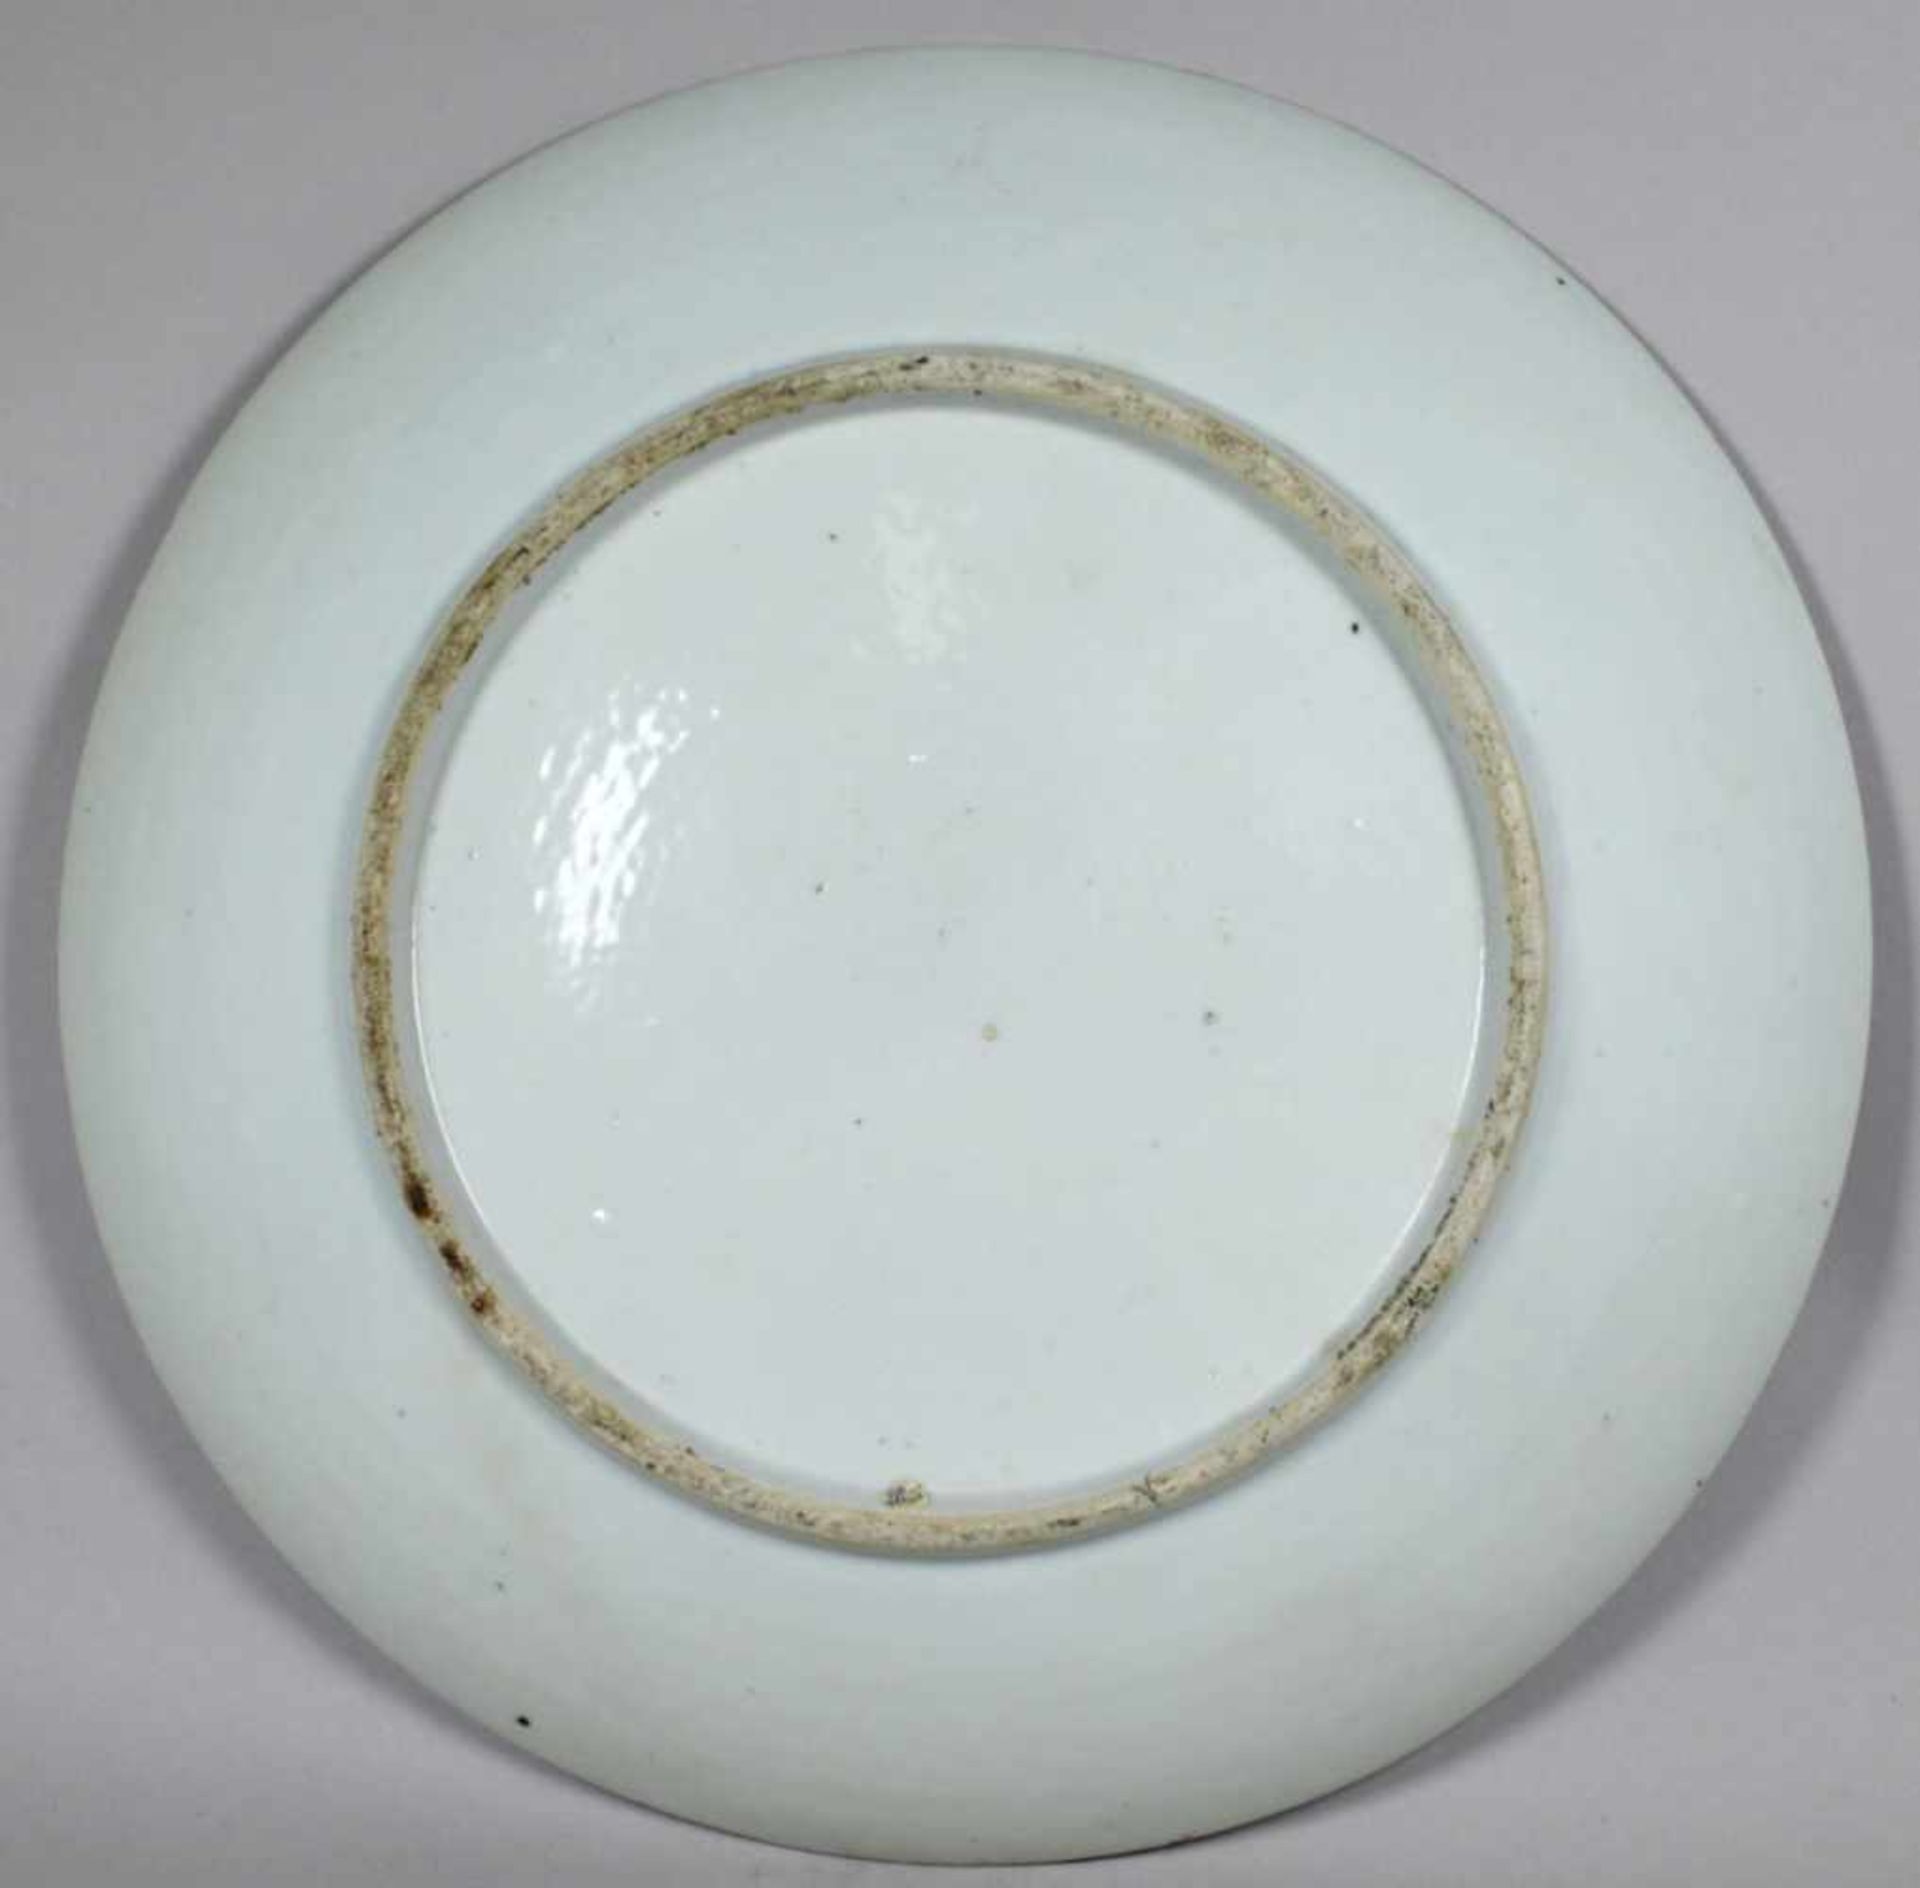 Porzellan-Zierteller, China, wohl 18. Jh., über kleinem Standring runde, gemuldete Form,< - Bild 2 aus 5